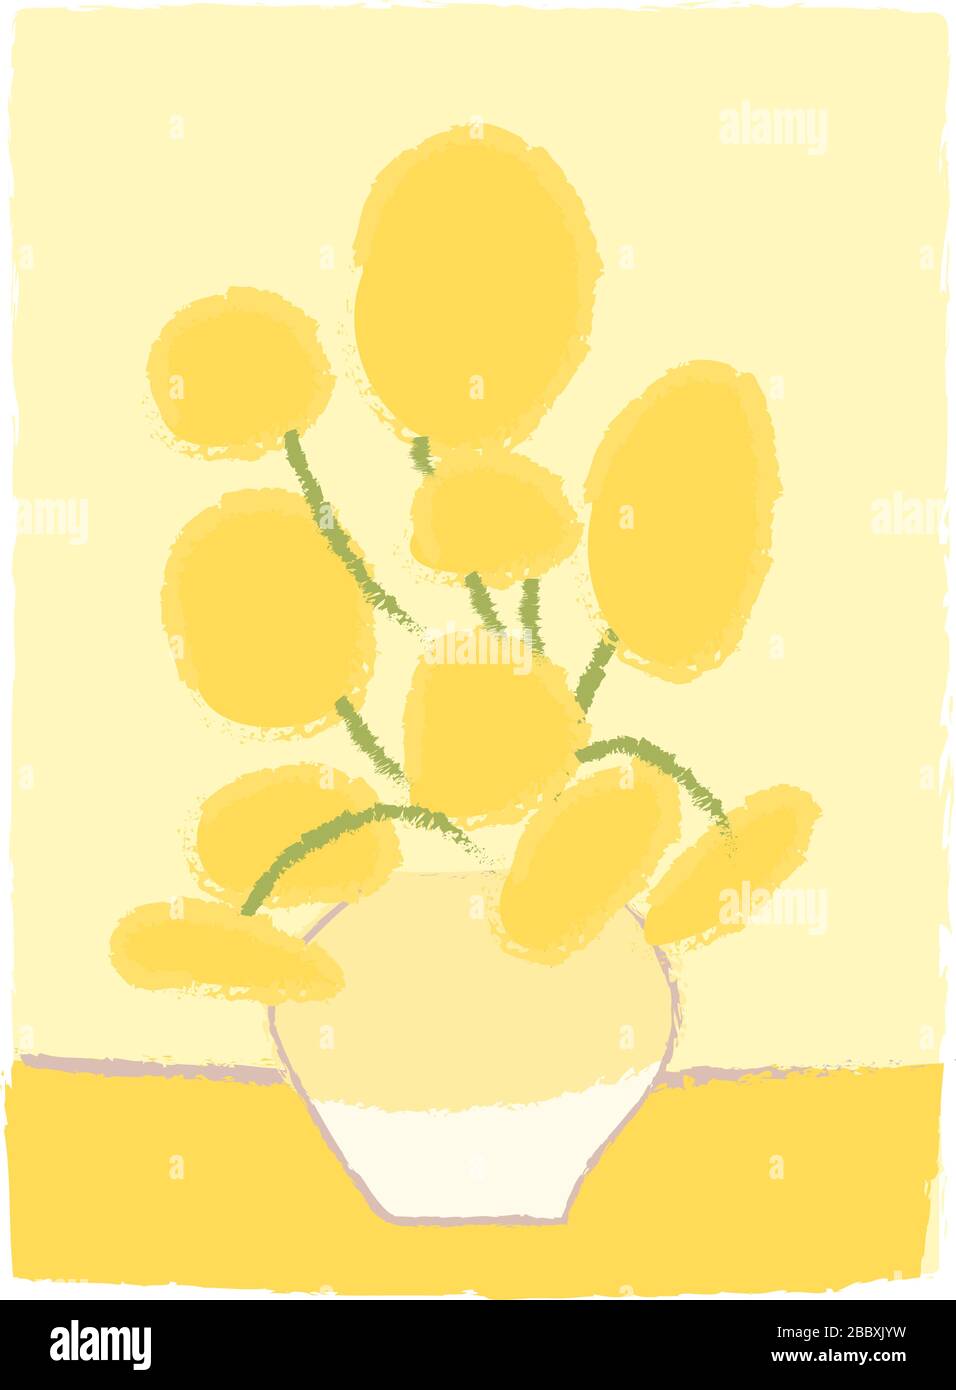 Sonnenblumen Van Gogh-Imitation wie Kinderzeichnung im Cartoon-Stil. Malerei des Impressionismus Gelbe Blumen in Vase. Blumenstrauß Grußkarte Dekoration. Einfaches, vektorstilisiertes Design isoliert. Stock Vektor